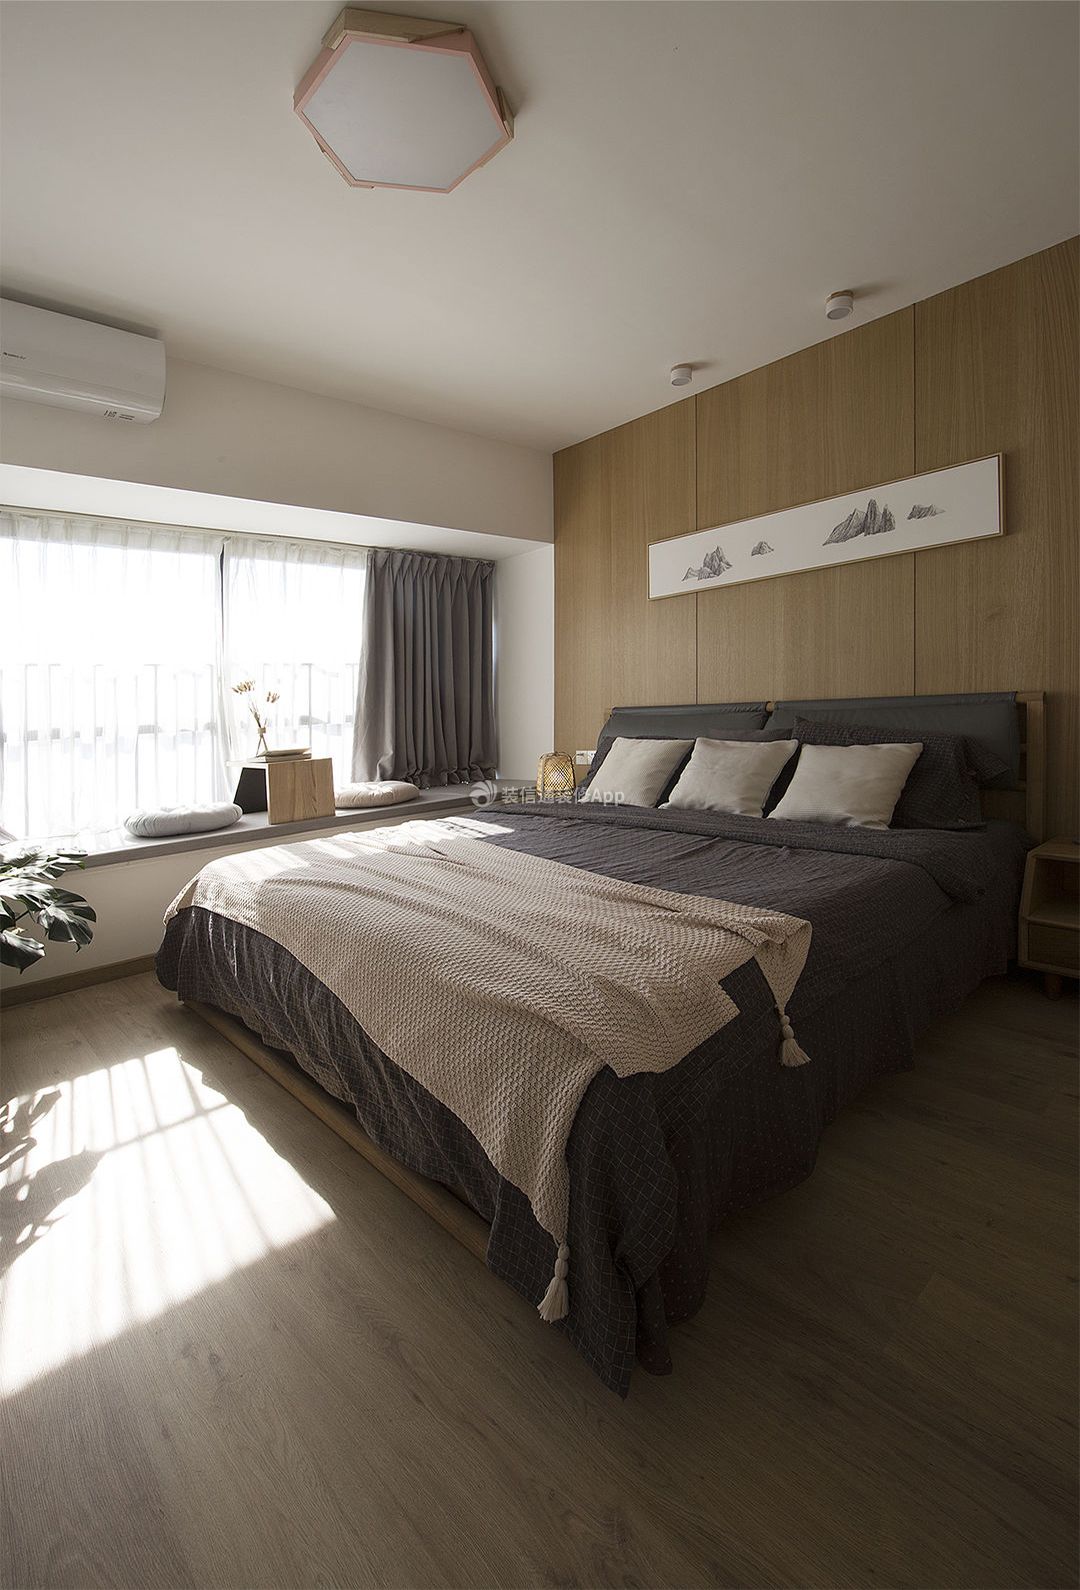 日式风格卧室床头设计装修效果图